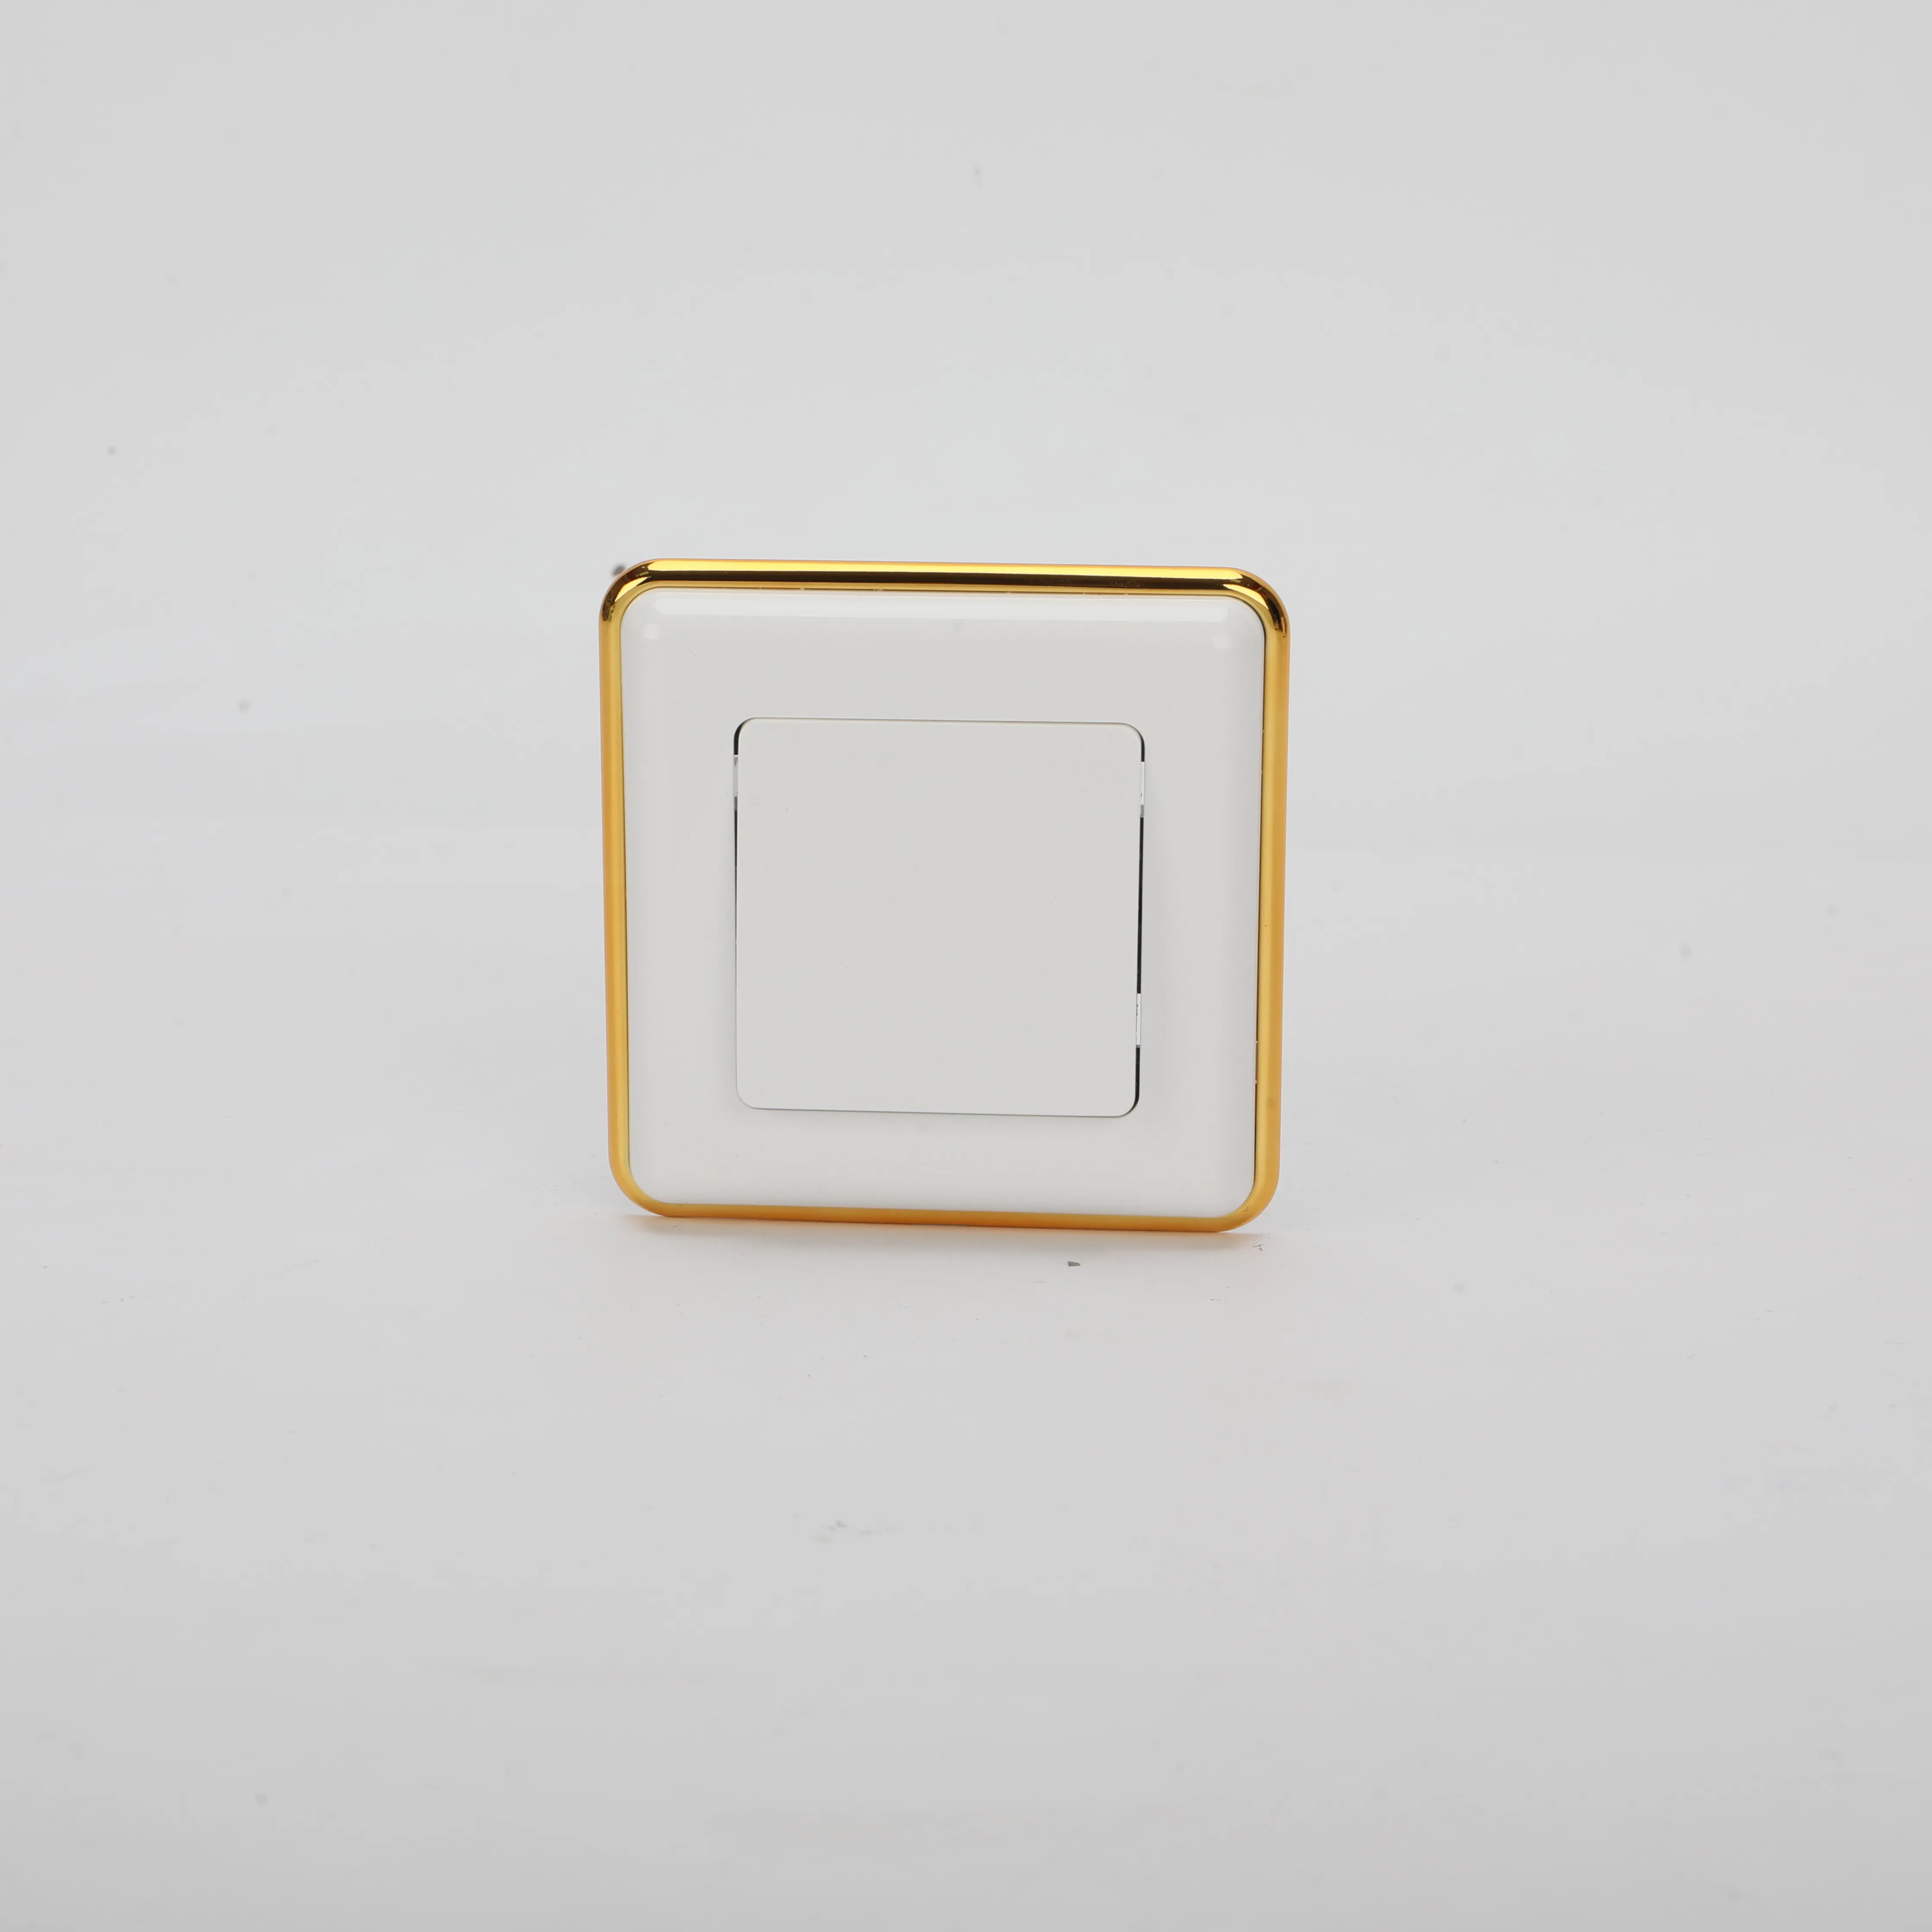 Saklar Prancis tombol tekan warna putih, dengan lampu, pelat kristal panel pc, saklar stop kontak